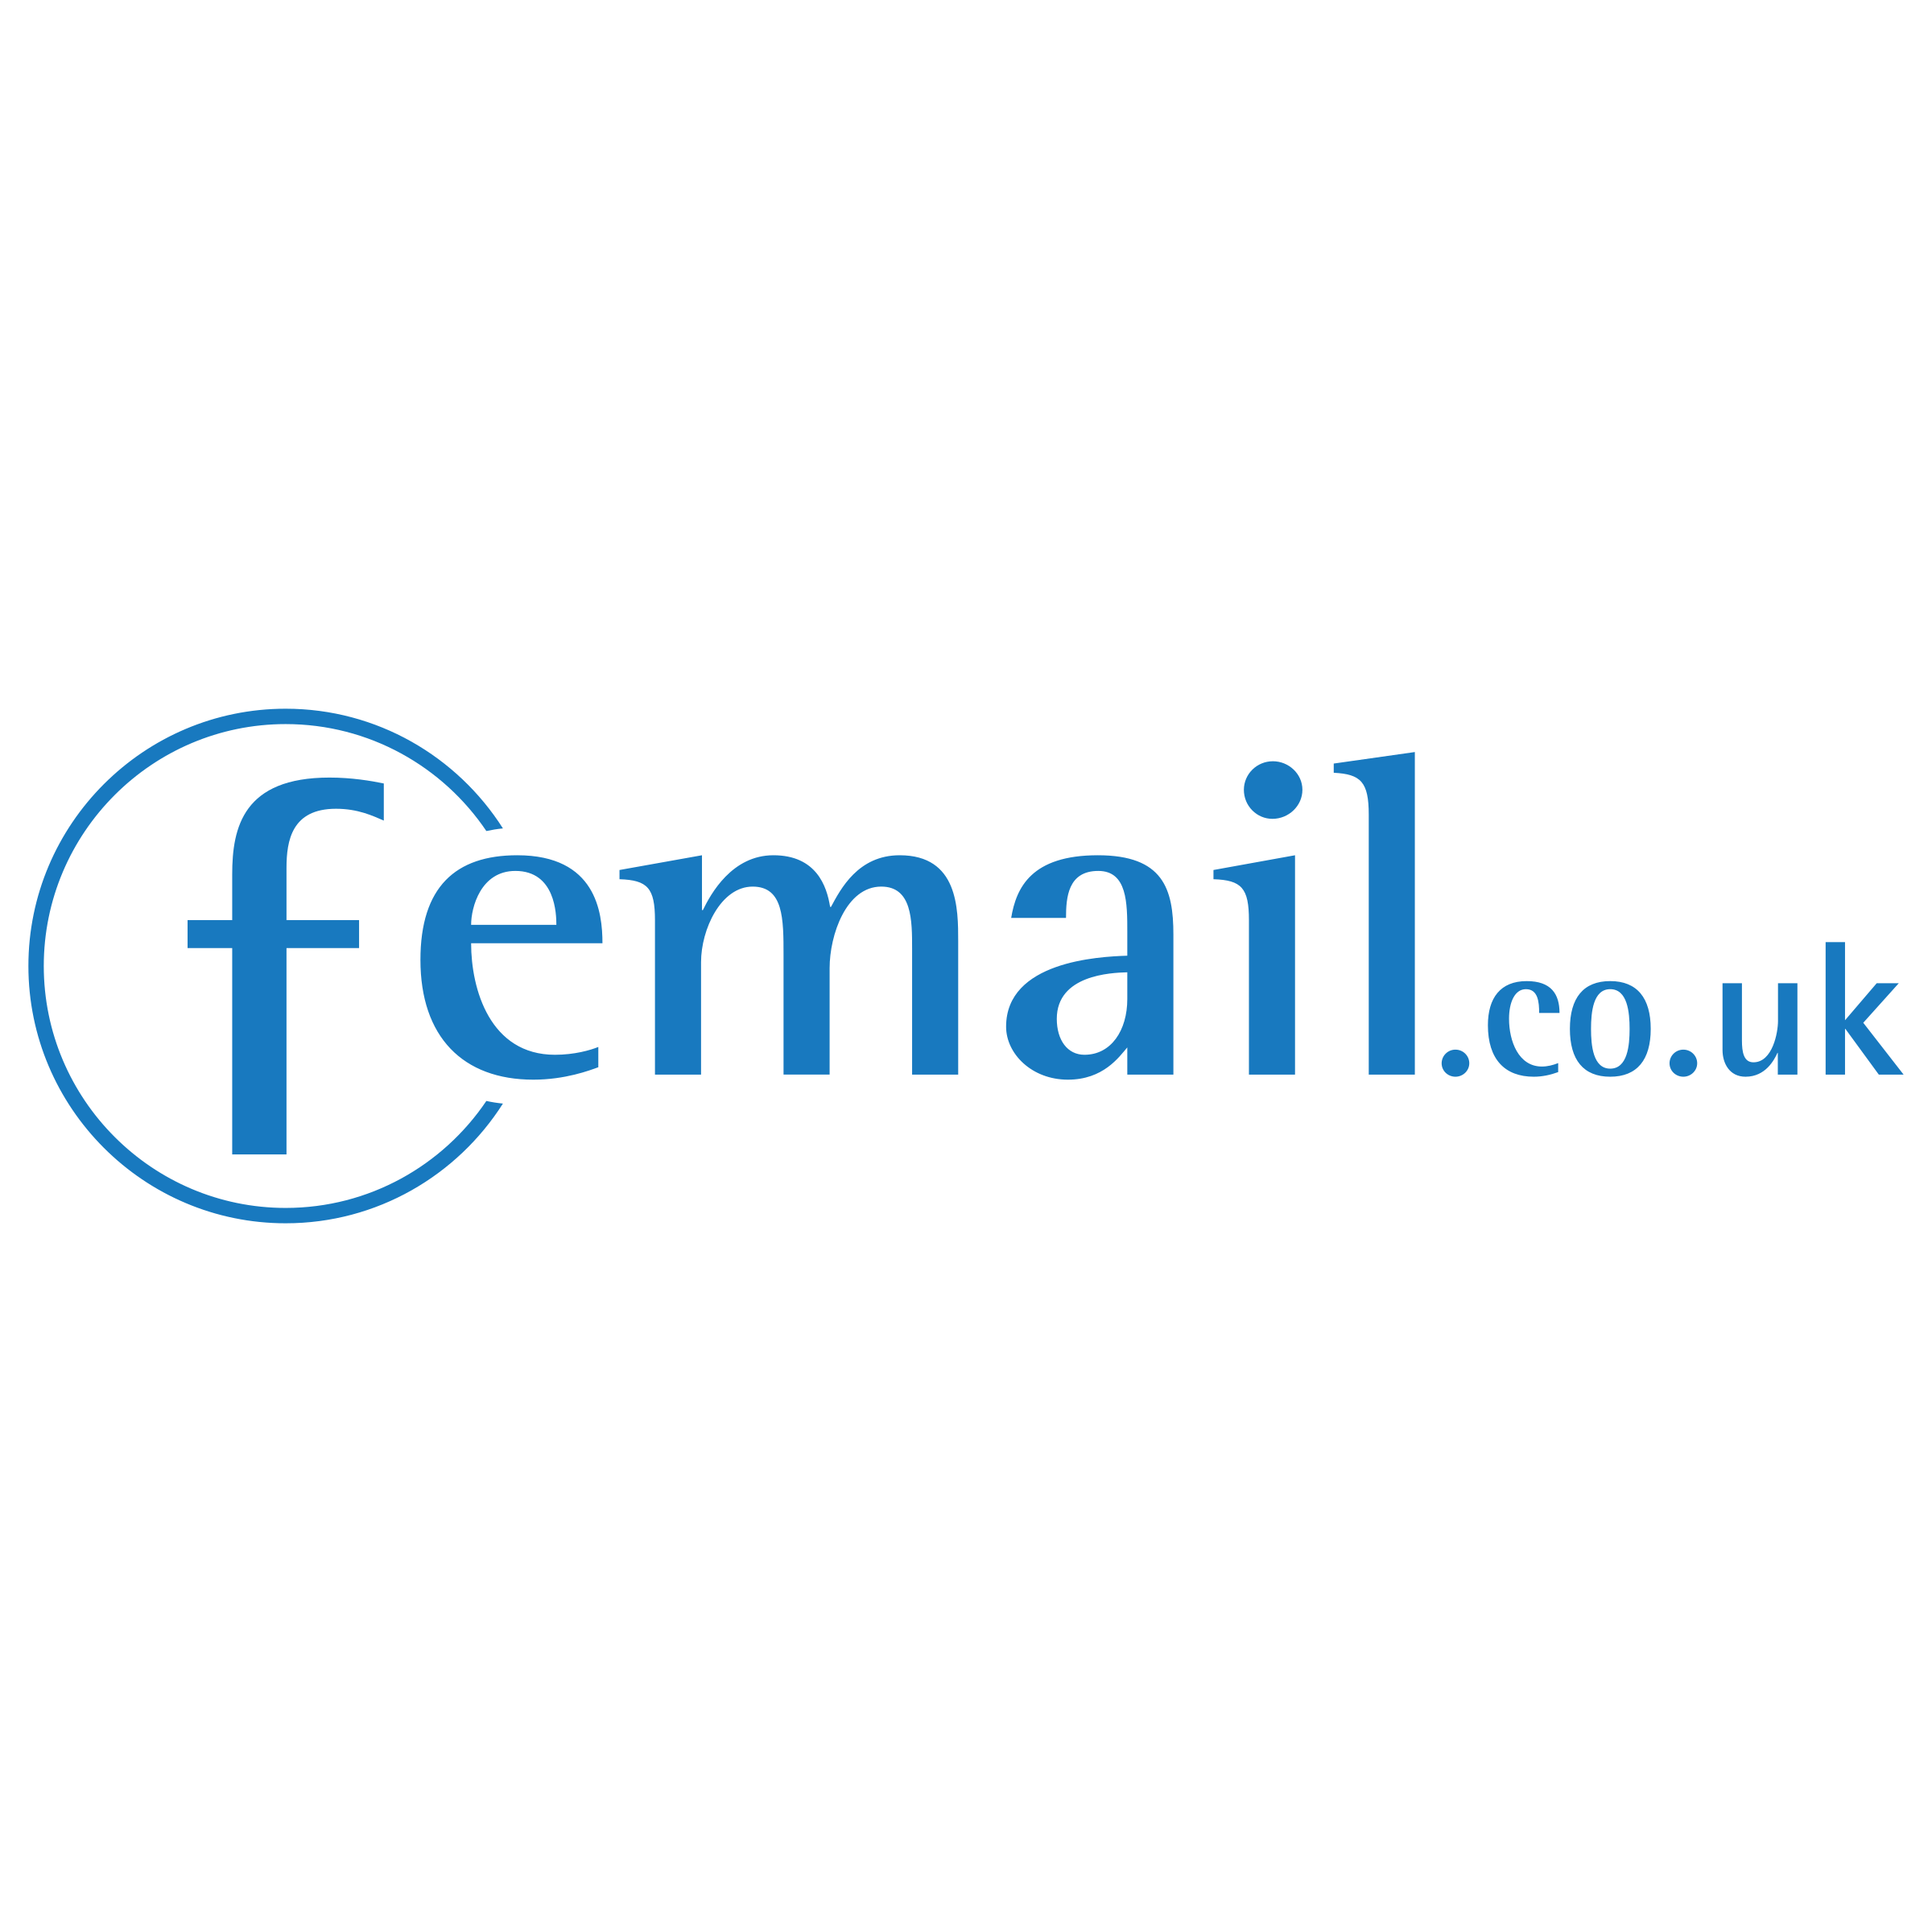 Femail Logo - Femail co uk Logo PNG Transparent & SVG Vector